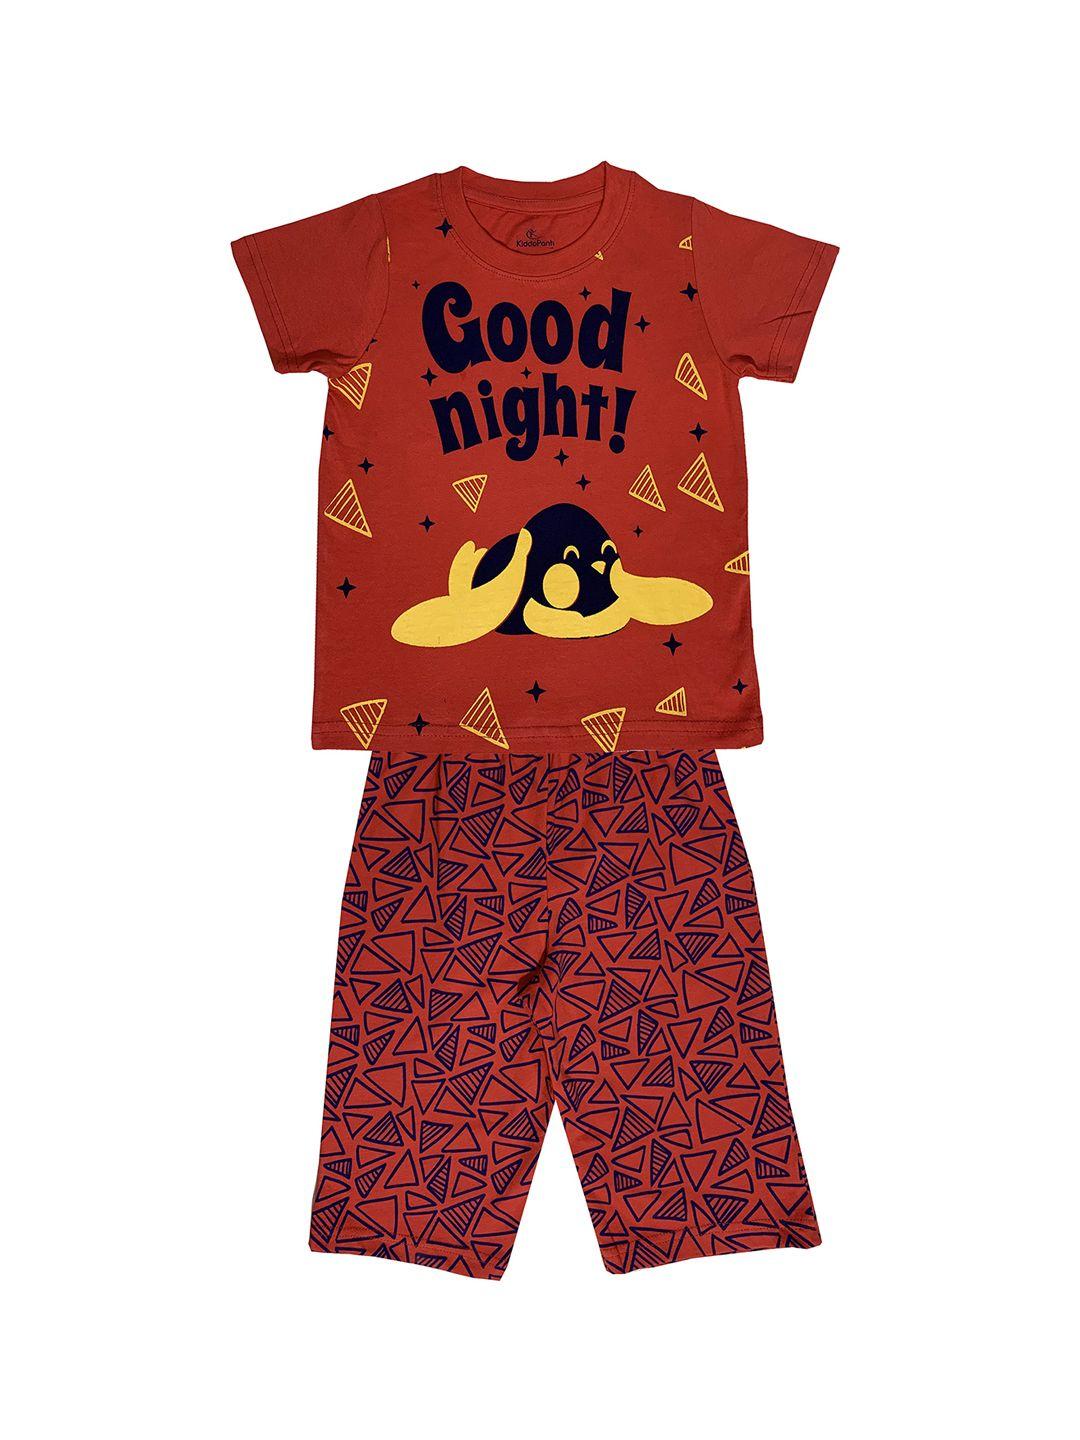 kiddopanti boys red printed night suit